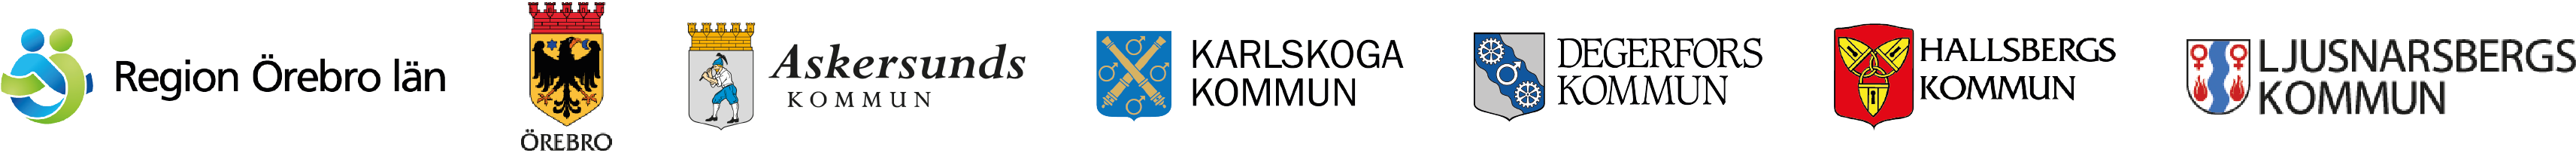 Logotyper från sex kommuner: Region Örebro län, Örebro kommun, Askersunds kommun, Karlskoga kommun, Degerfors kommun, Hallsbergs kommun och Ljusnarsbergs kommun